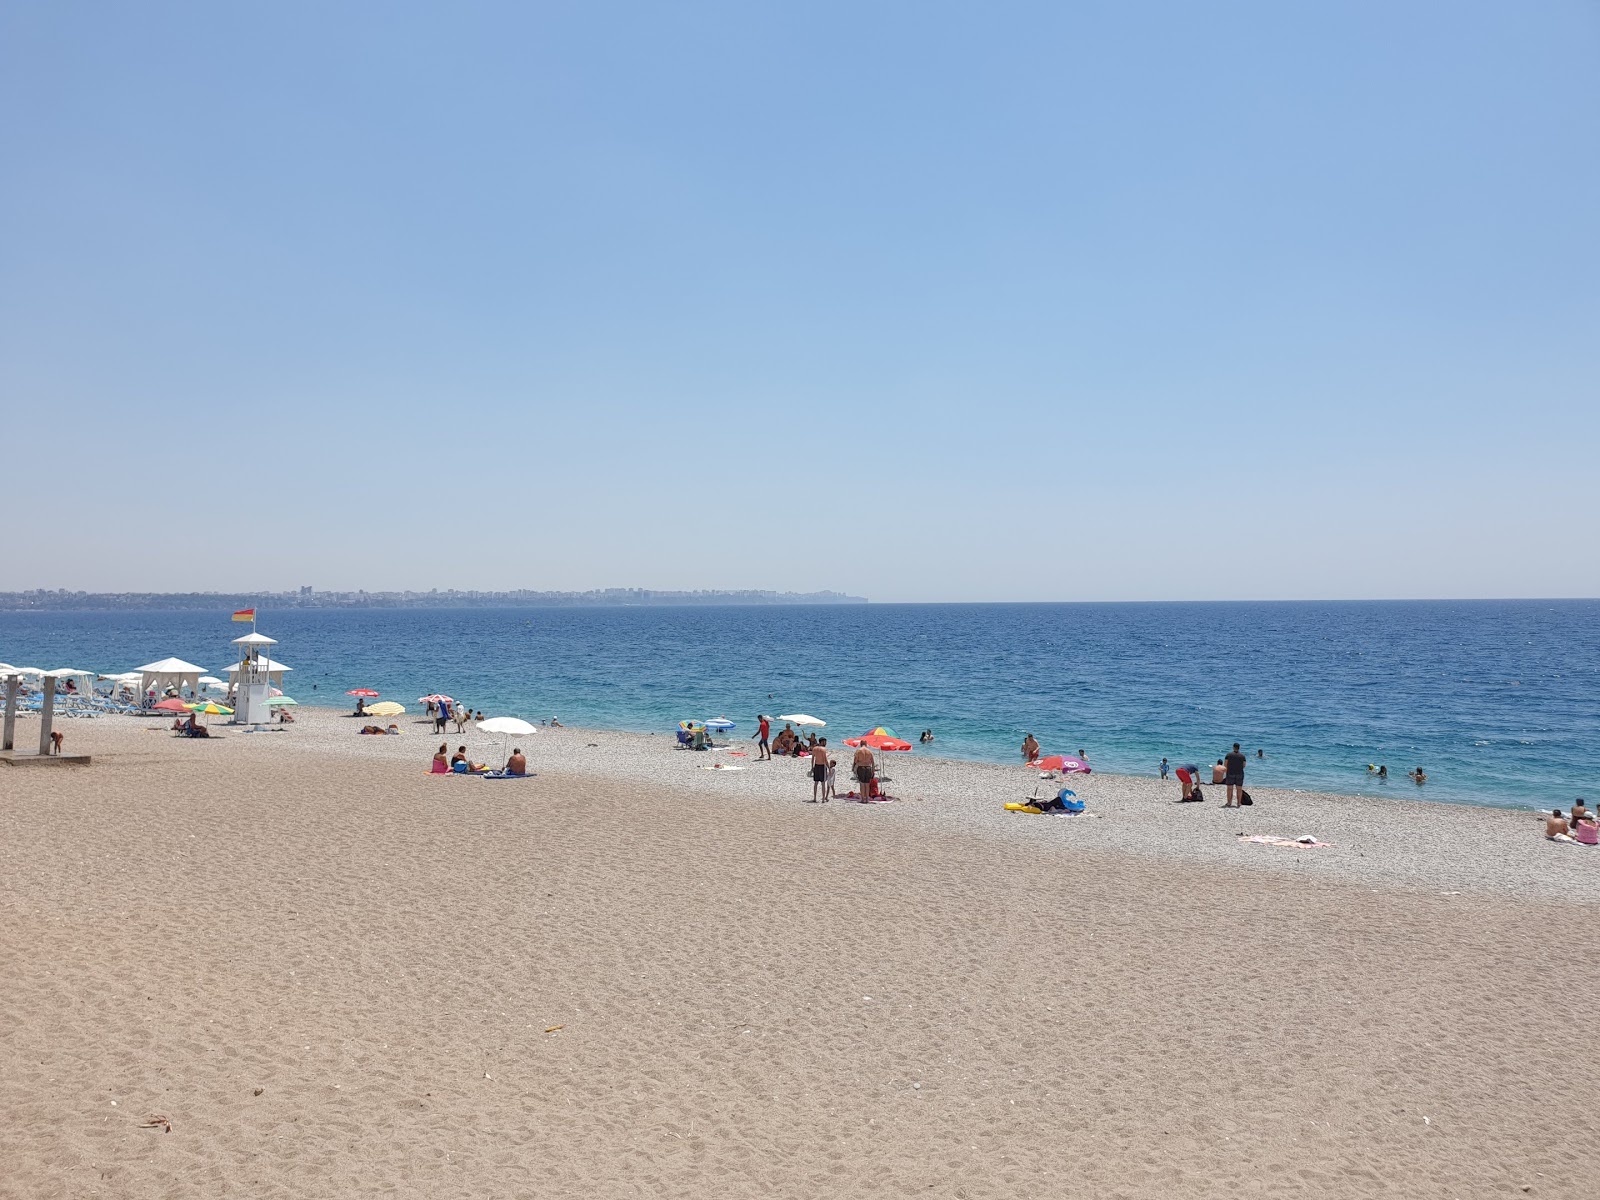 坎亚尔蒂海滩的照片 带有蓝色纯水表面